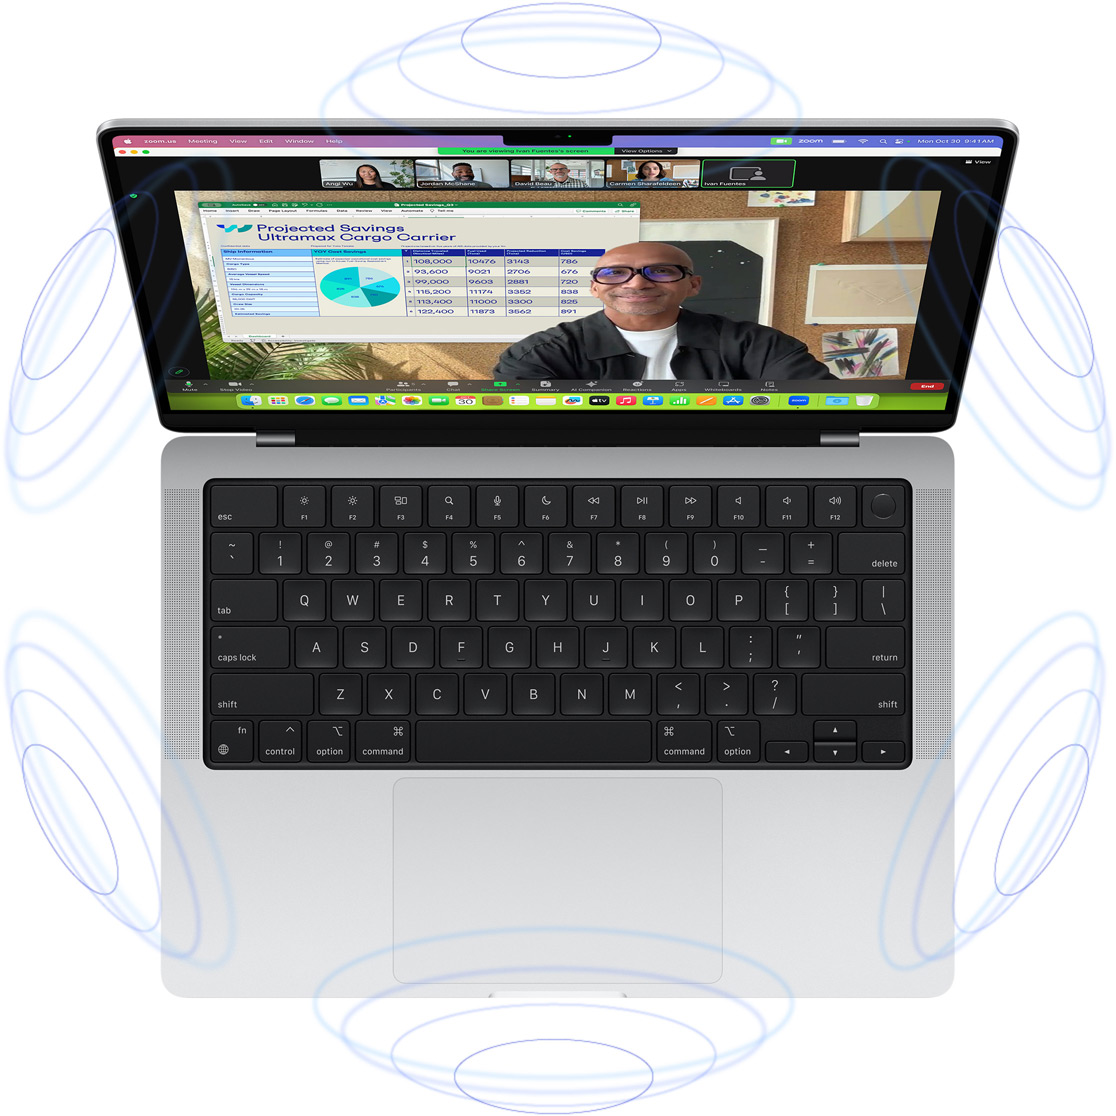 Een FaceTime-videogesprek op MacBook Pro, omgeven door illustraties van blauwe cirkels die het 3D-gevoel van ruimtelijke audio suggereren